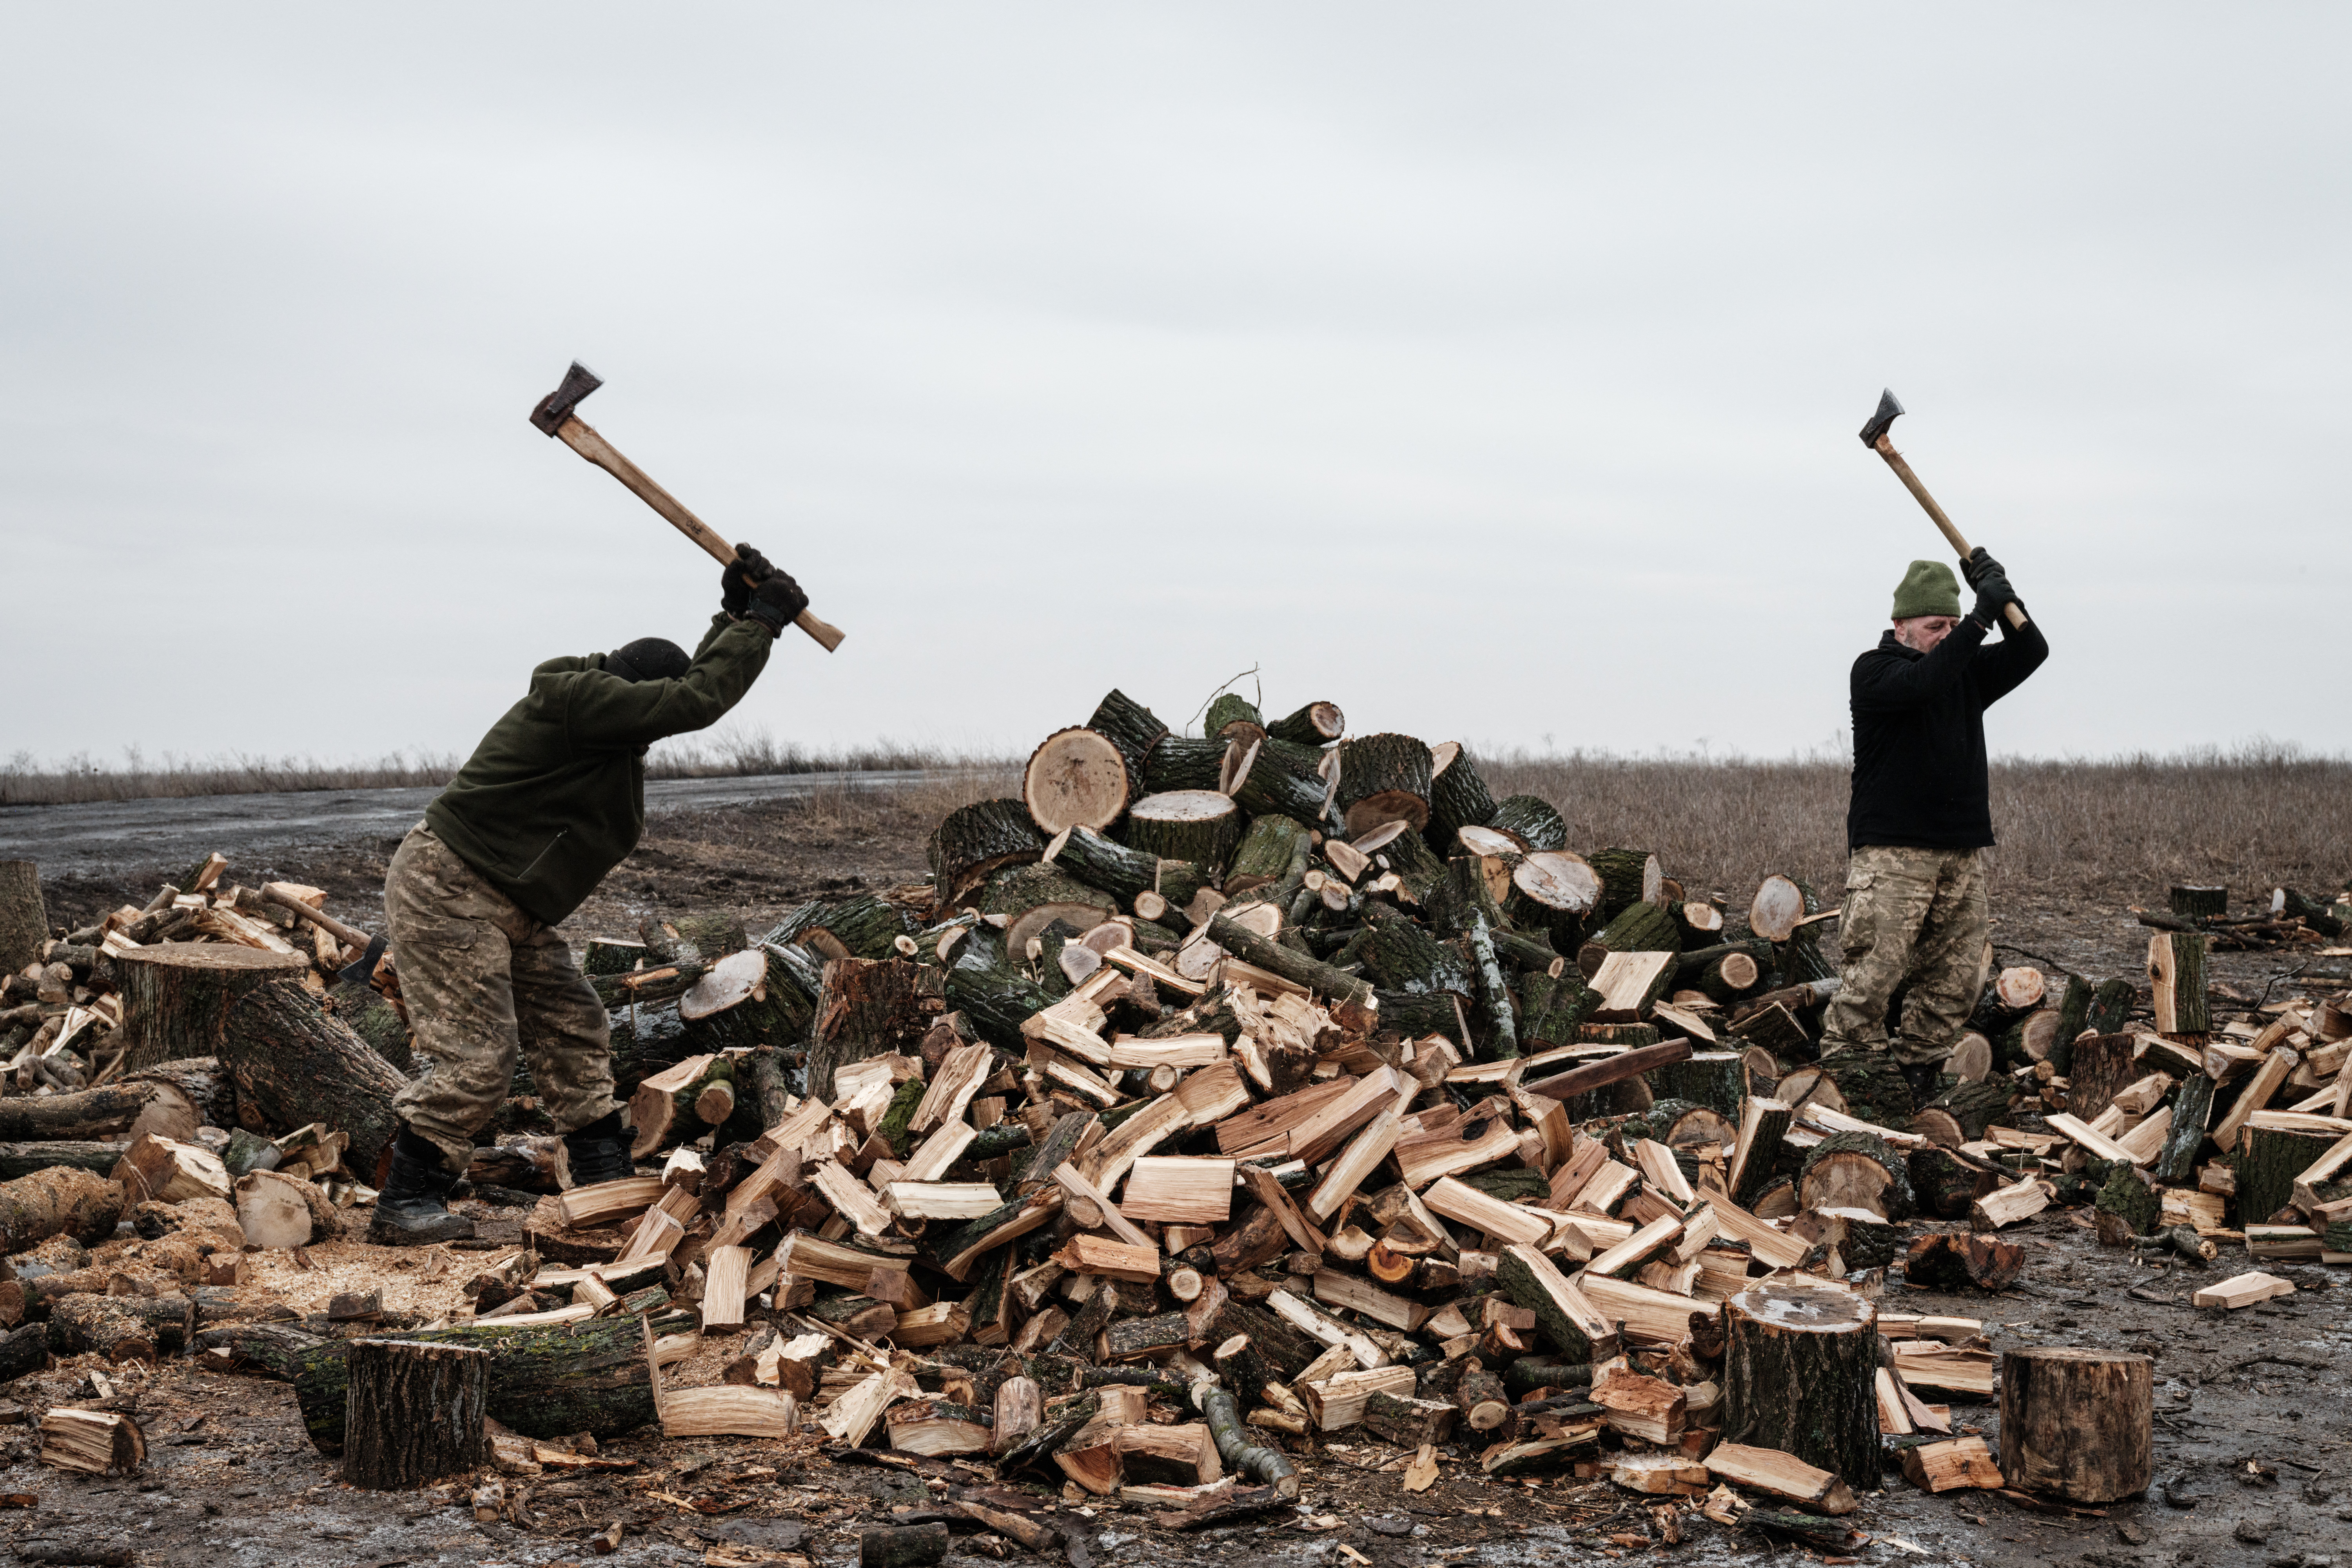 Otros militares ucranianos cortan madera para fortalecer las trincheras cavadas en el suelo endurecido por el frío, y dar un poco de calor a las tropas (YASUYOSHI CHIBA / AFP)